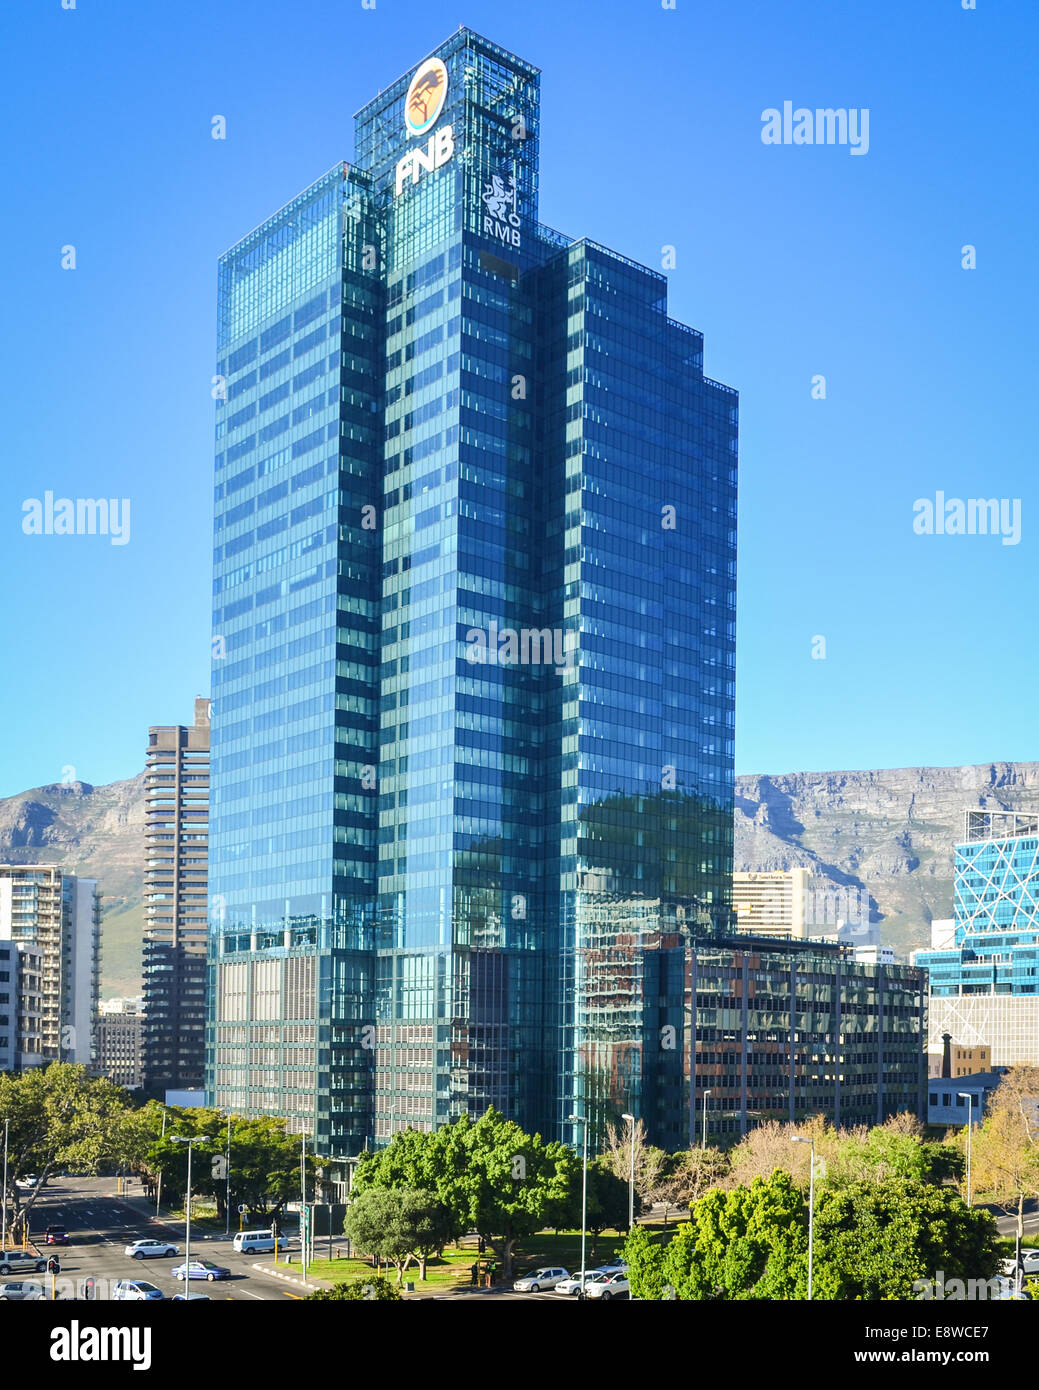 FNB RMB Gebäude in der Stadt Center of Cape Town, Südafrika Stockfoto